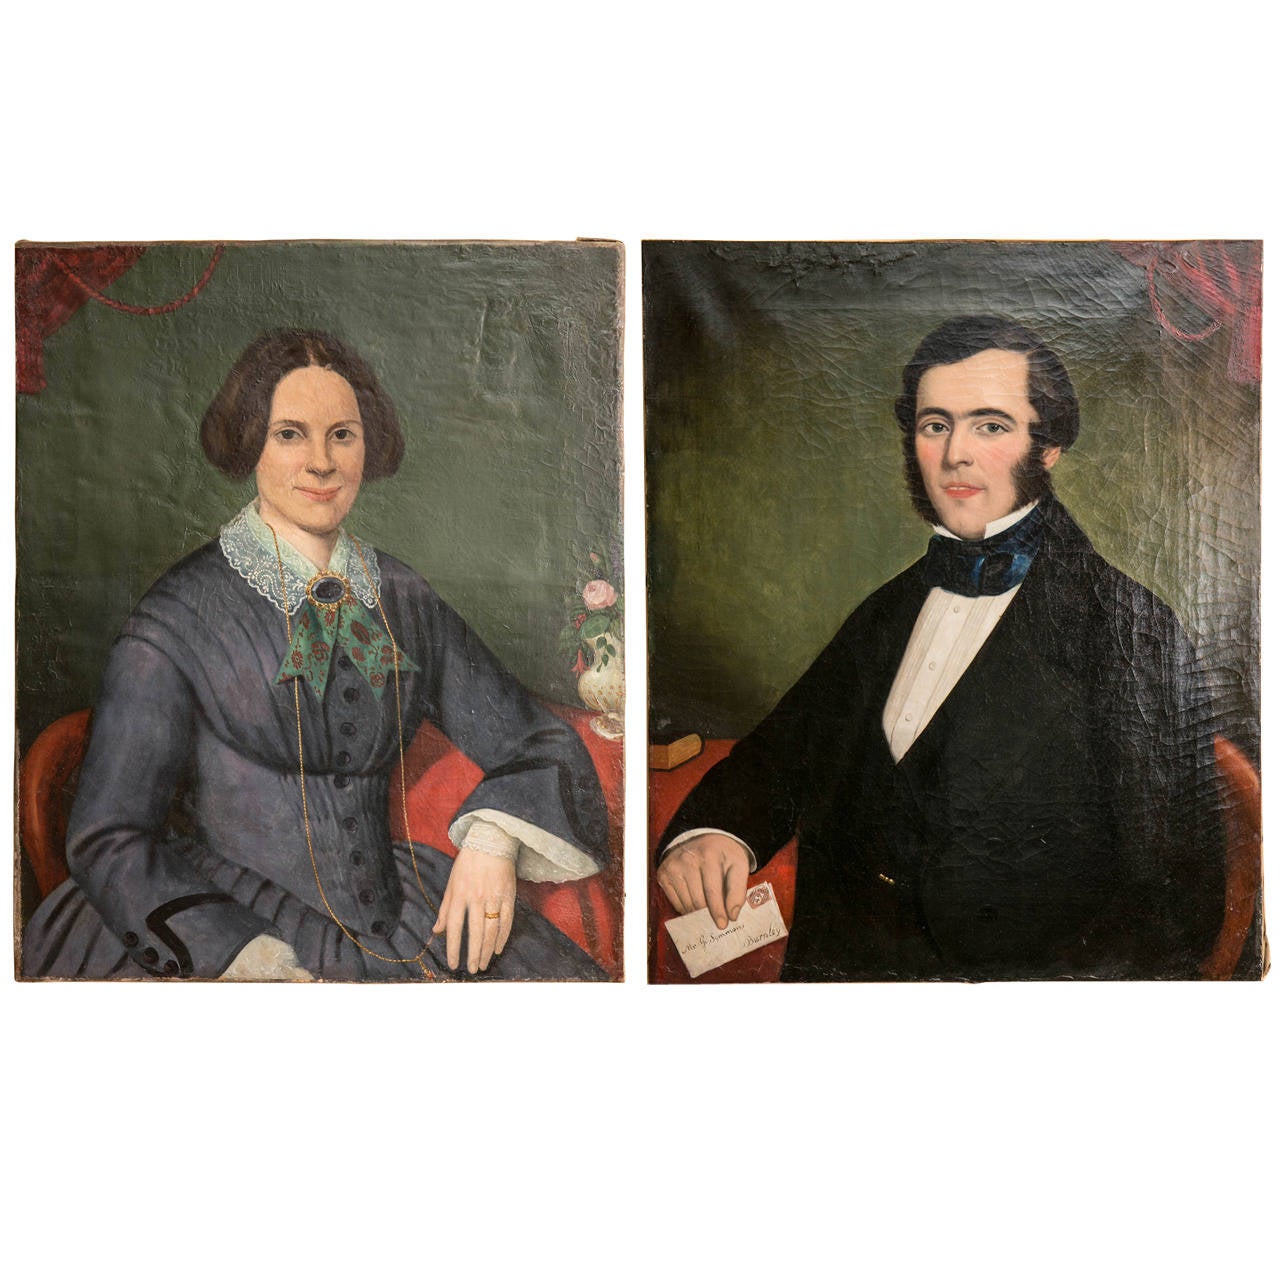 Porträts von englischen Gentlemen und Damen